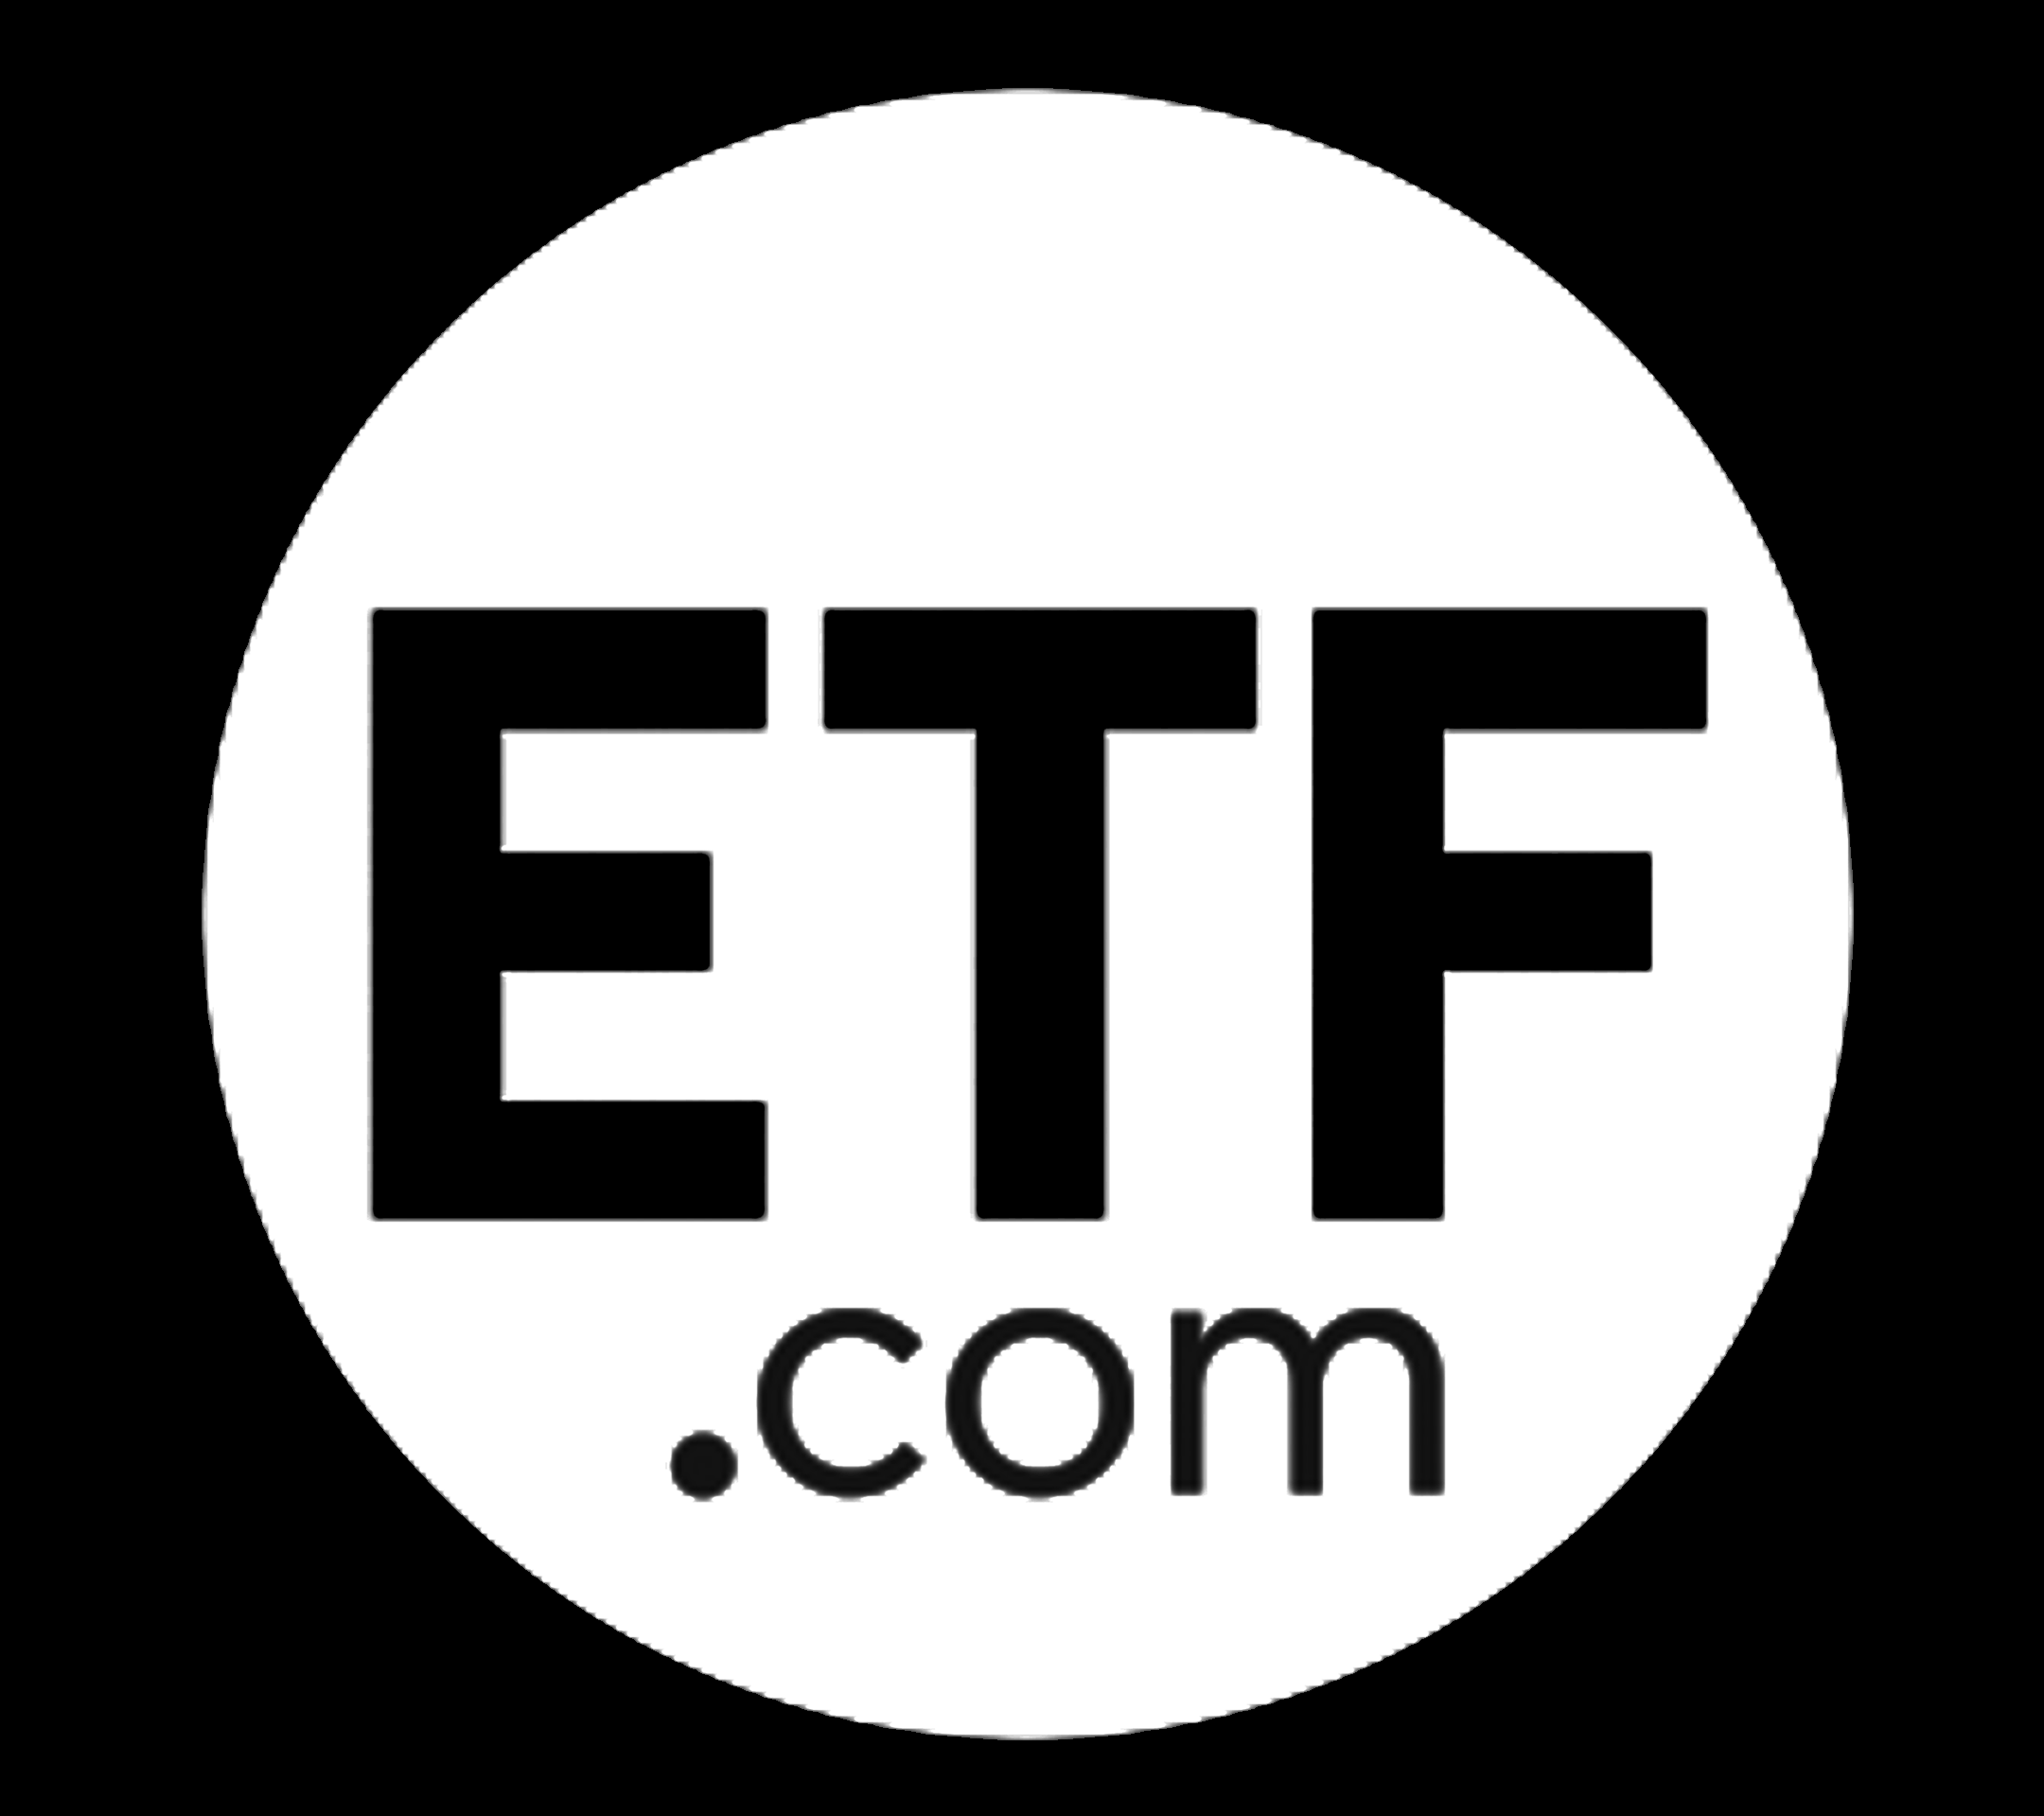 ETF.com